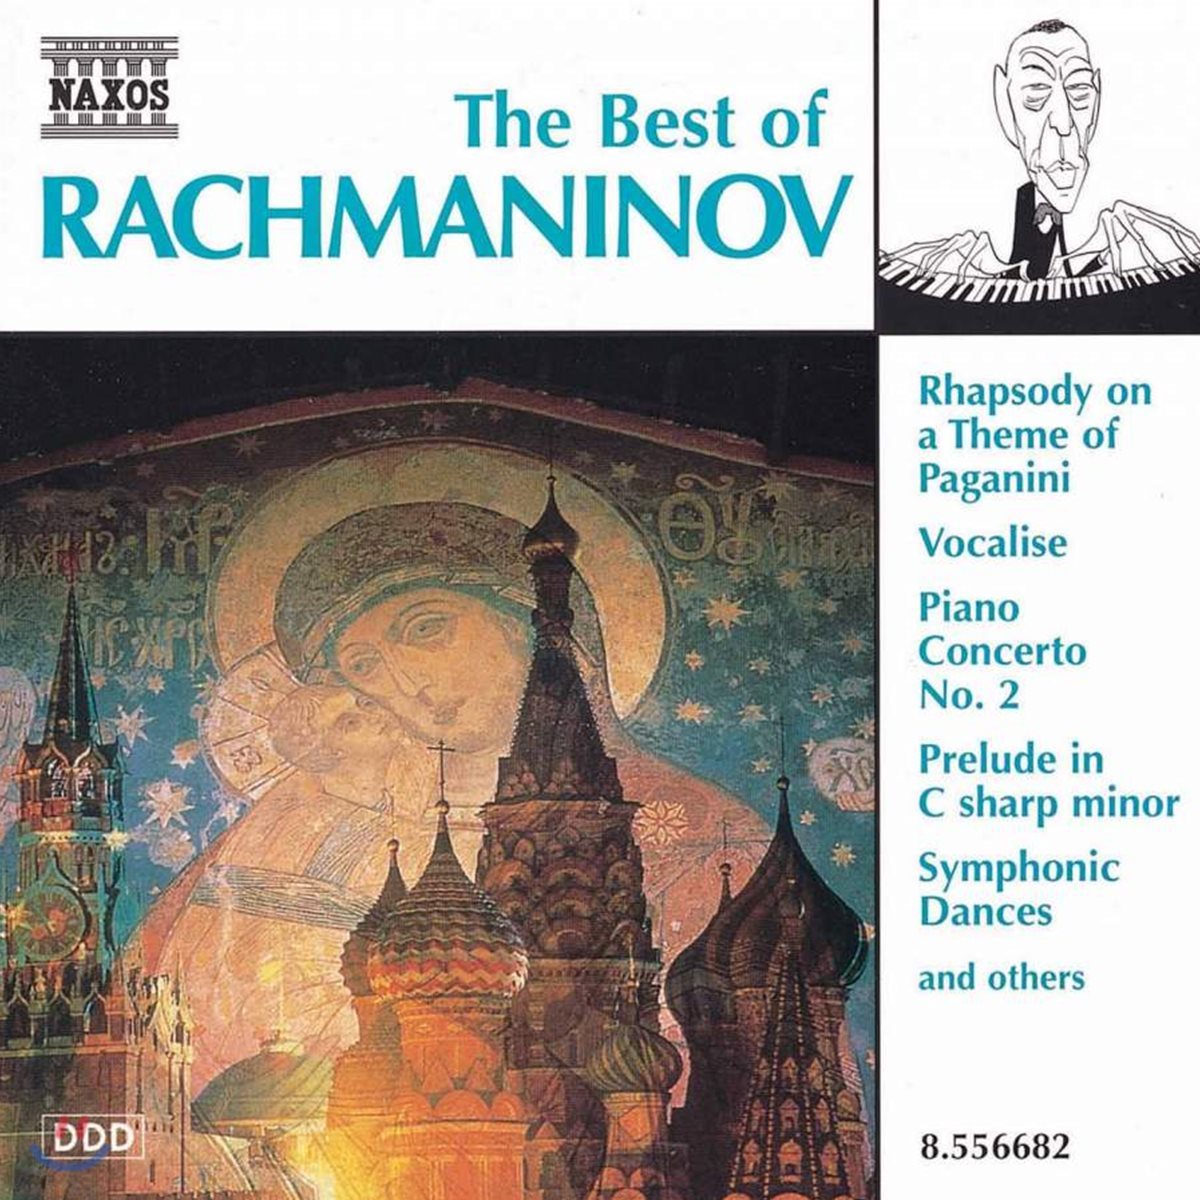 라흐마니노프 명곡집 (The Best Of Rachmaninov)